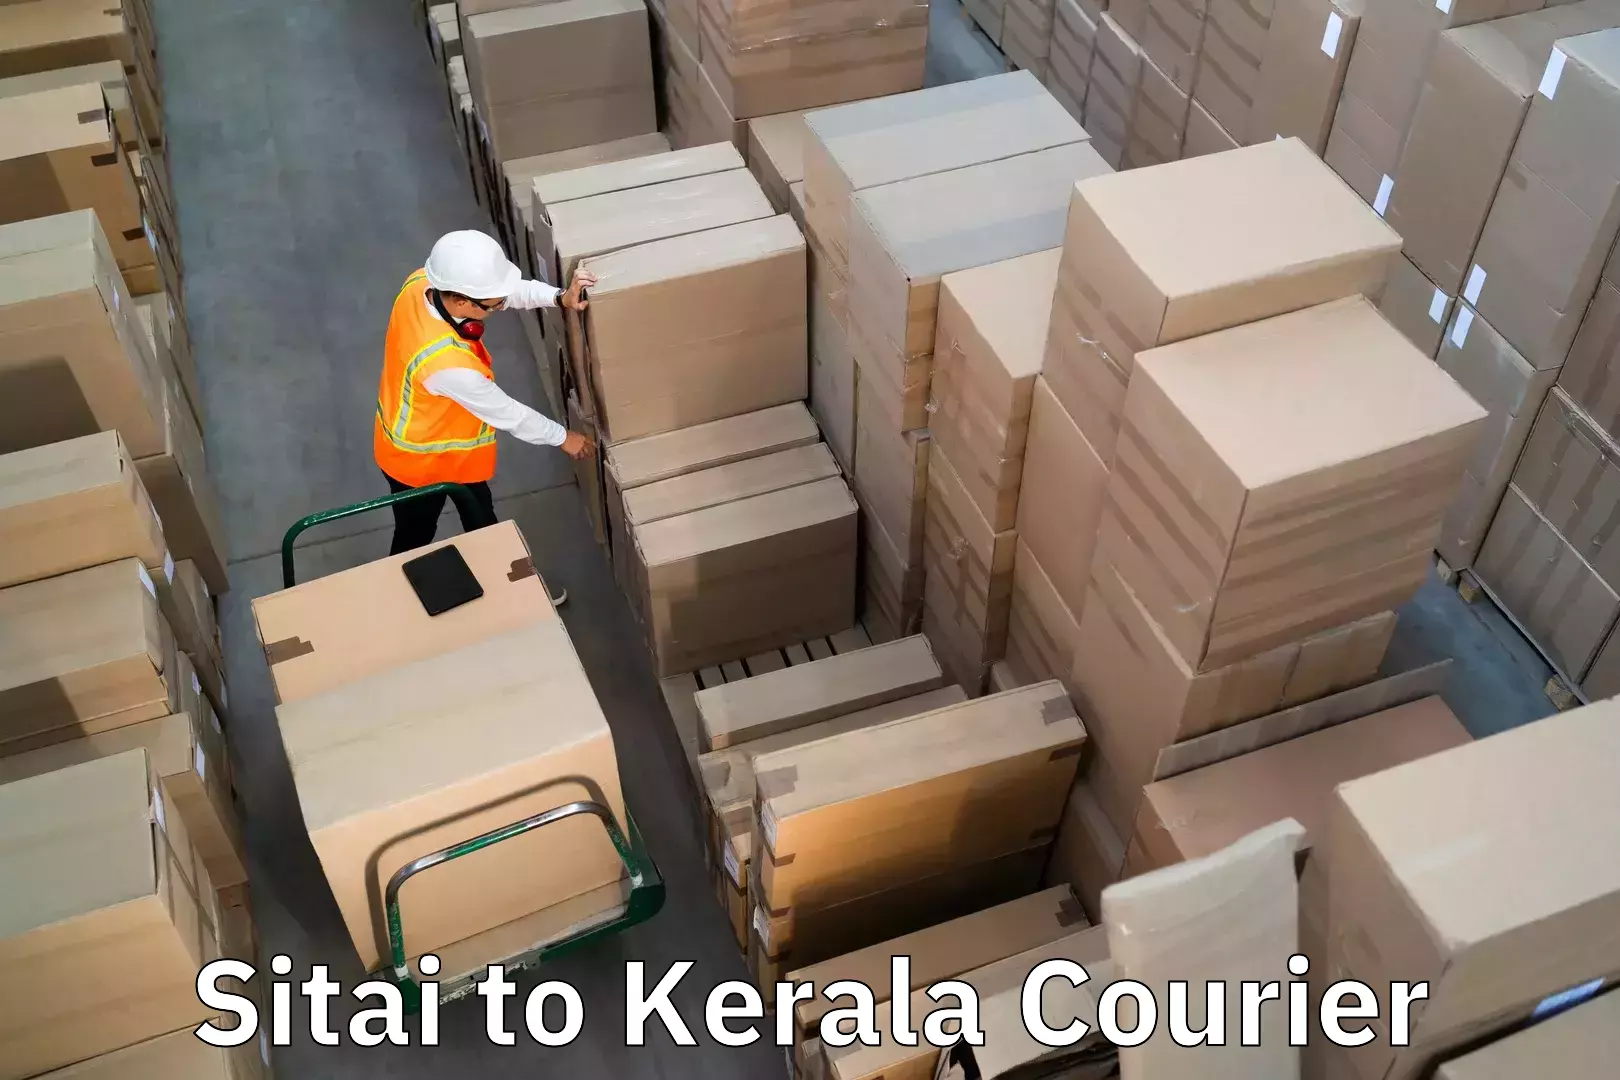 Luggage transport company Sitai to Kattappana